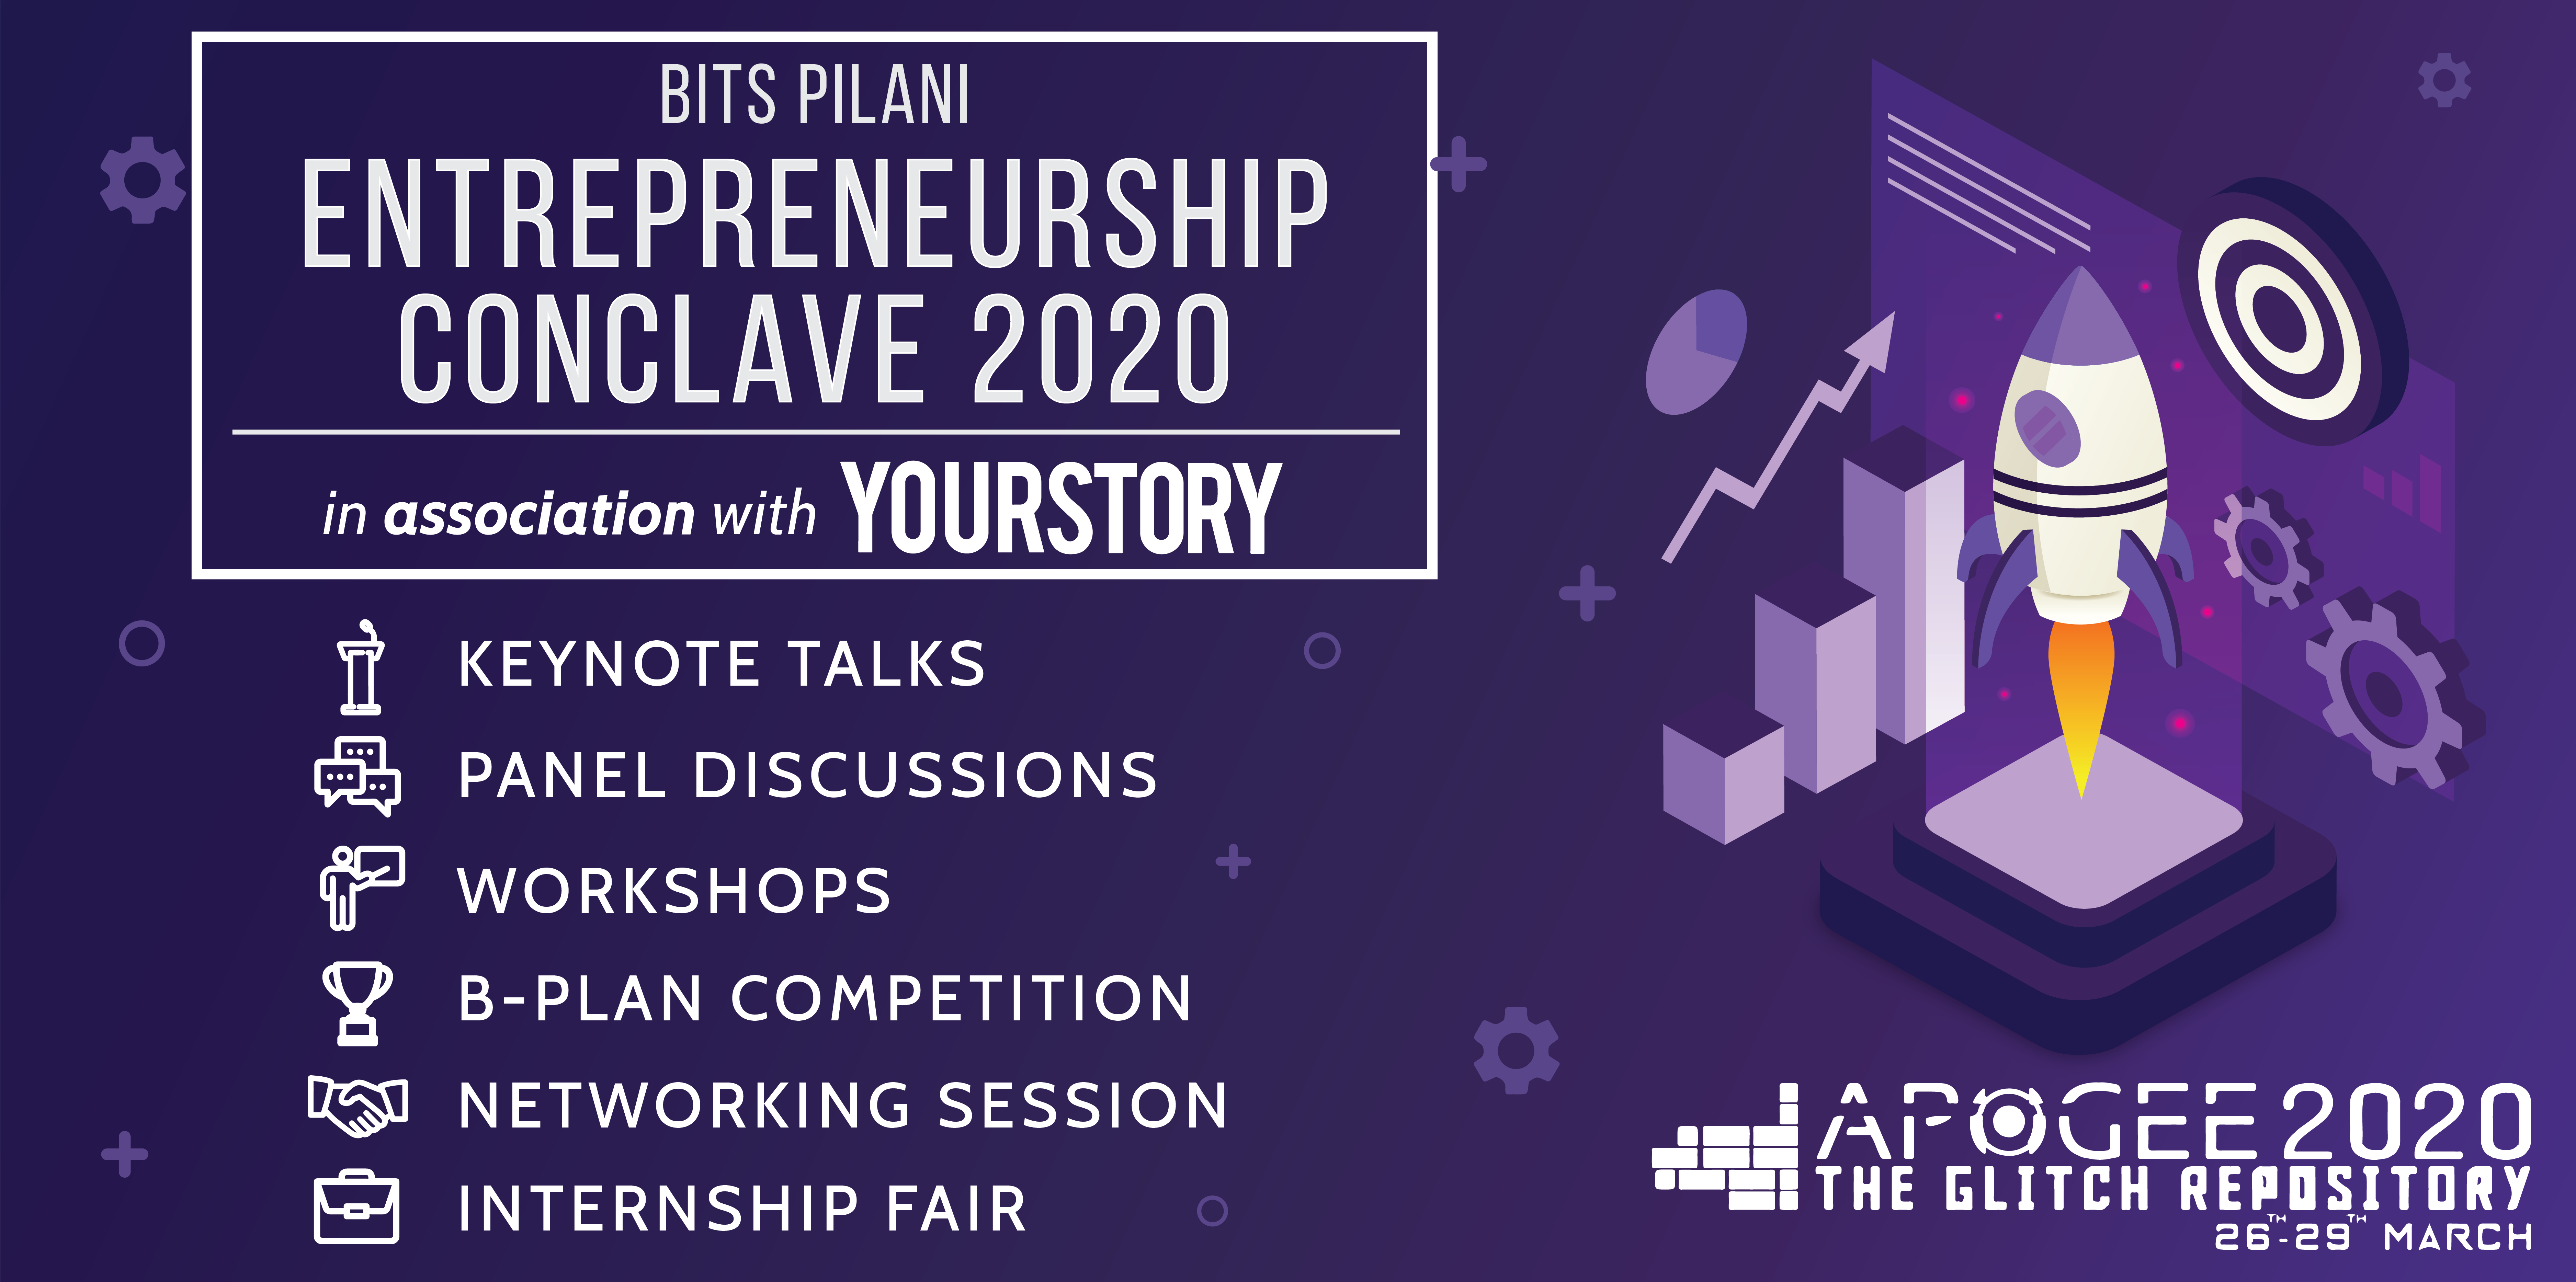 Announcing BITS Pilani Entrepreneurship Conclave 2020